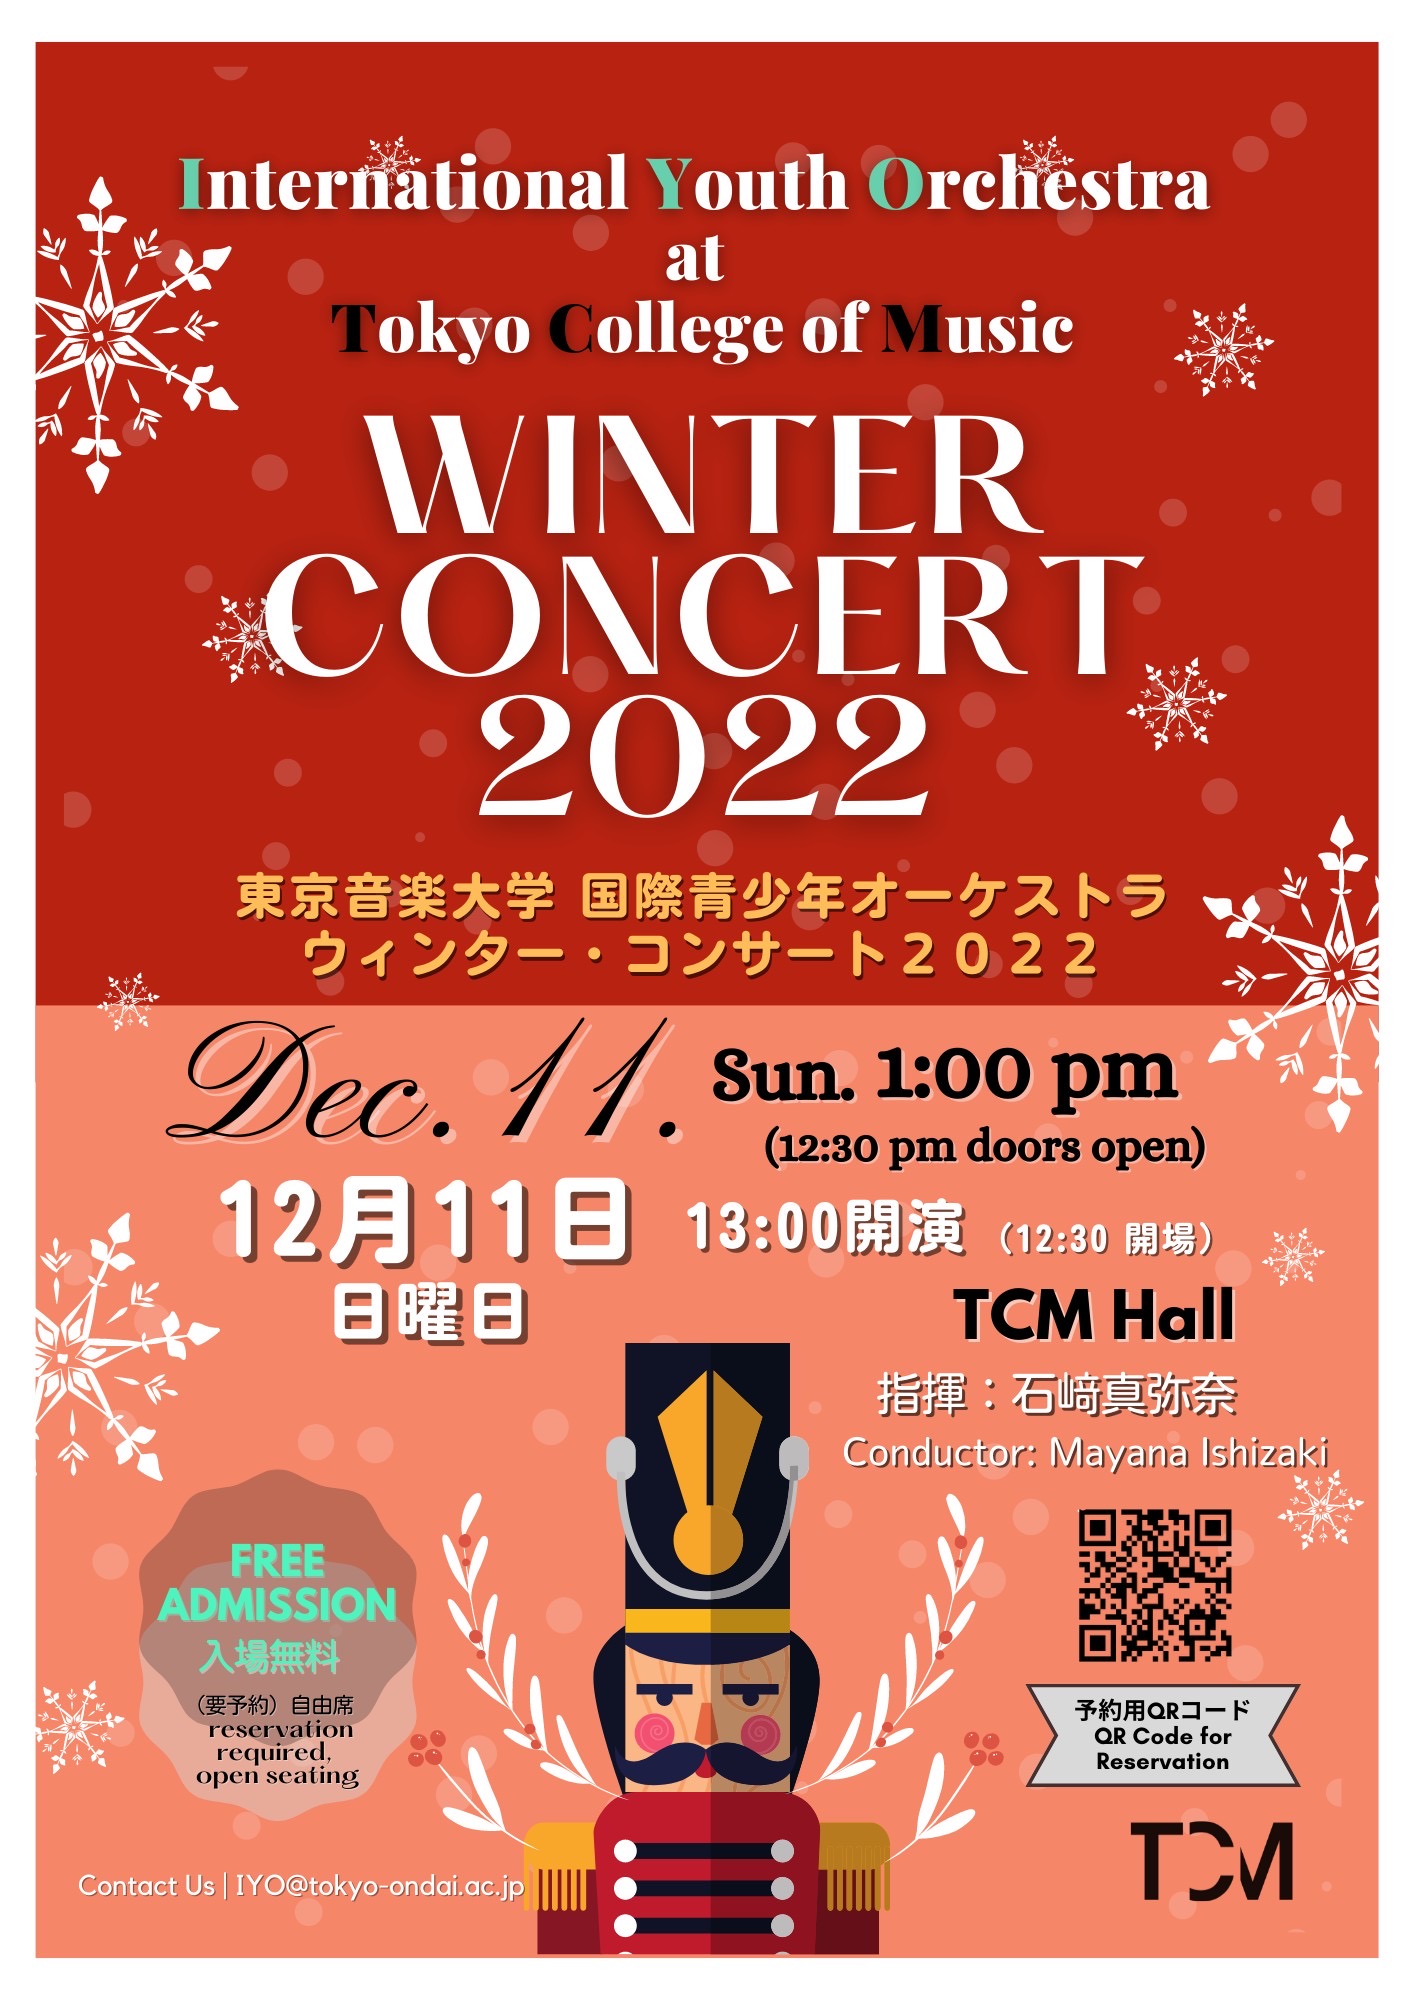 東京音楽大学 国際青少年オーケストラ　ウィンター・コンサート2022 のお知らせ